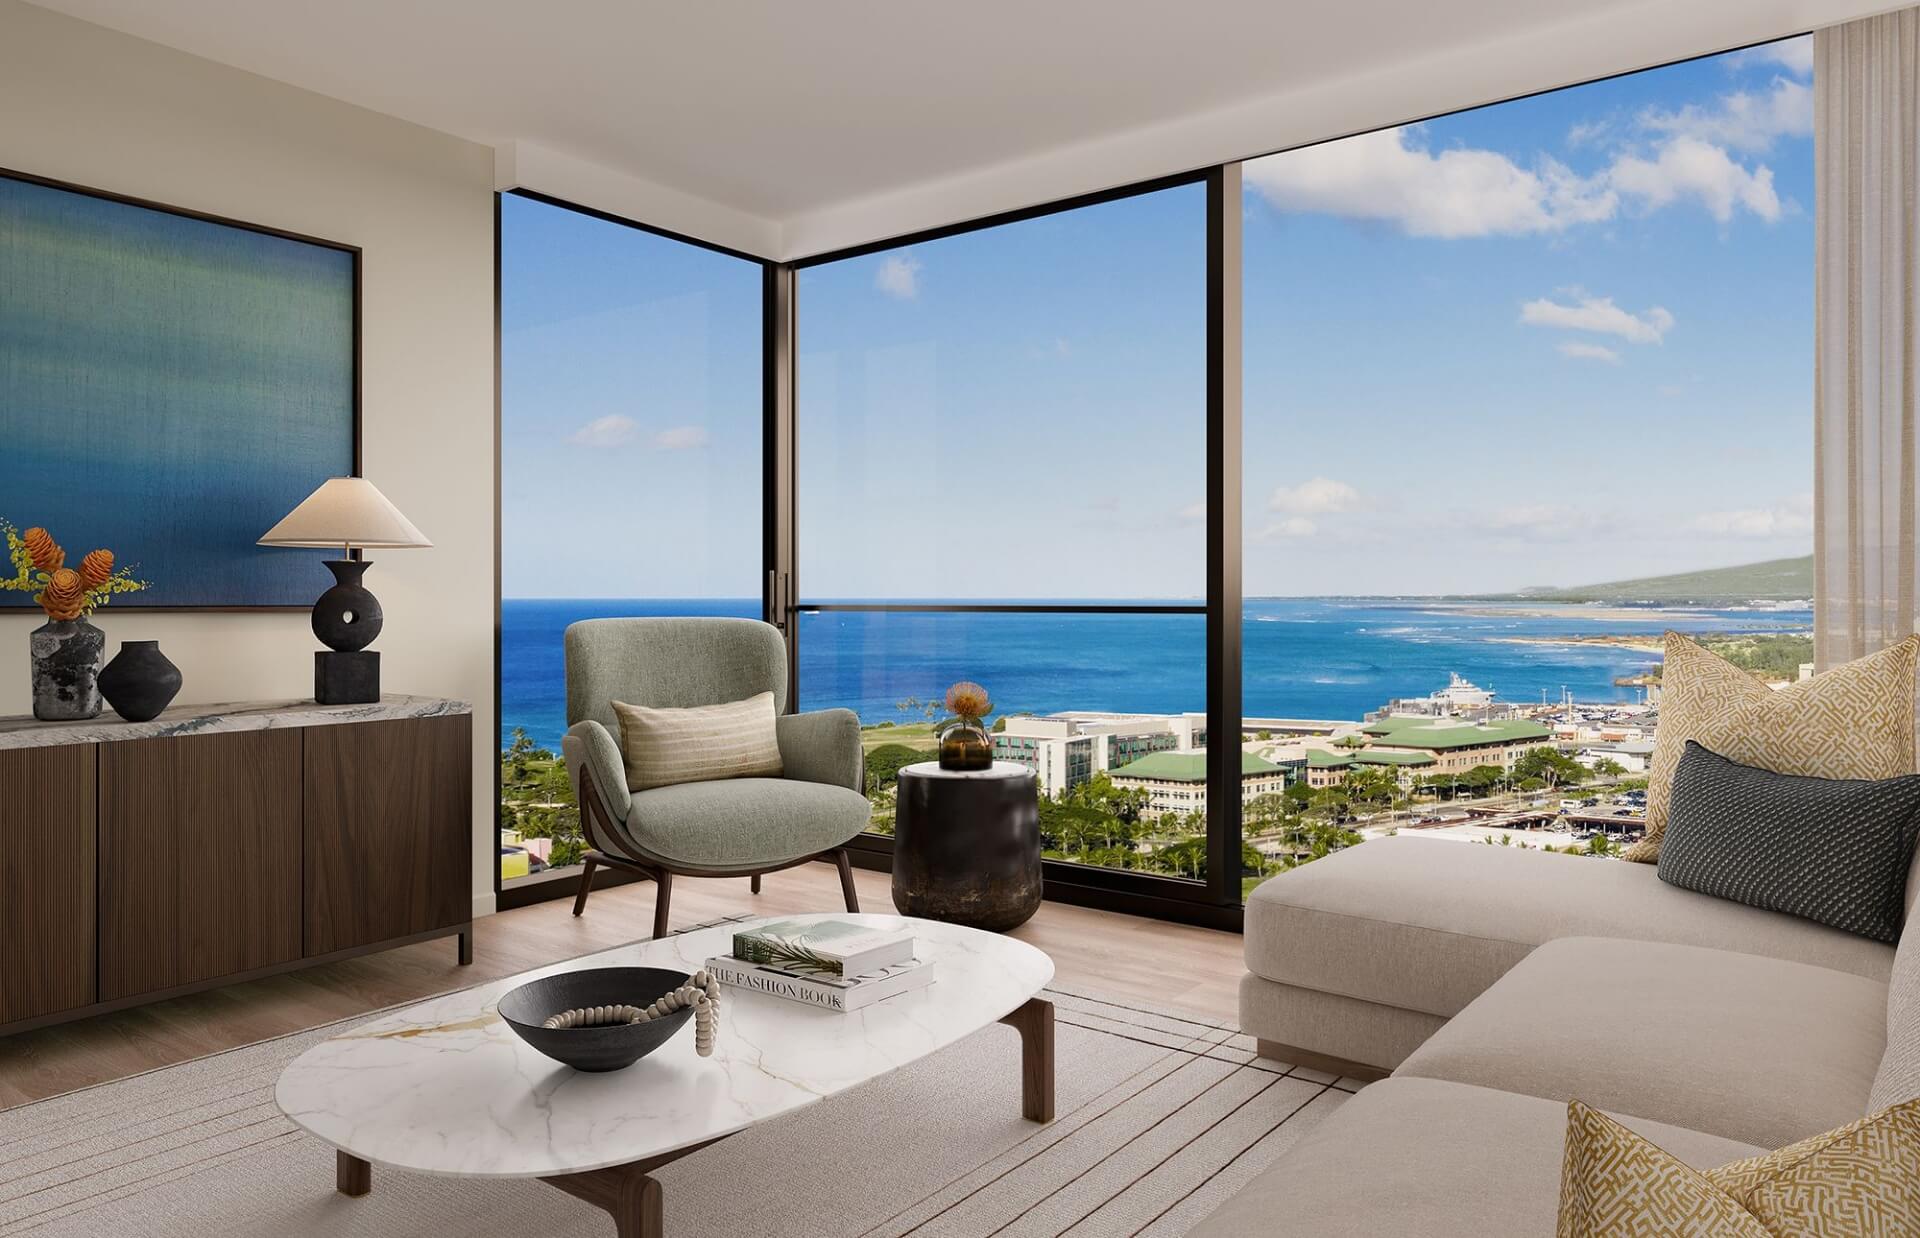 Kalae one bedroom Residence 07 Living Room with westward views of the Honolulu coastline.